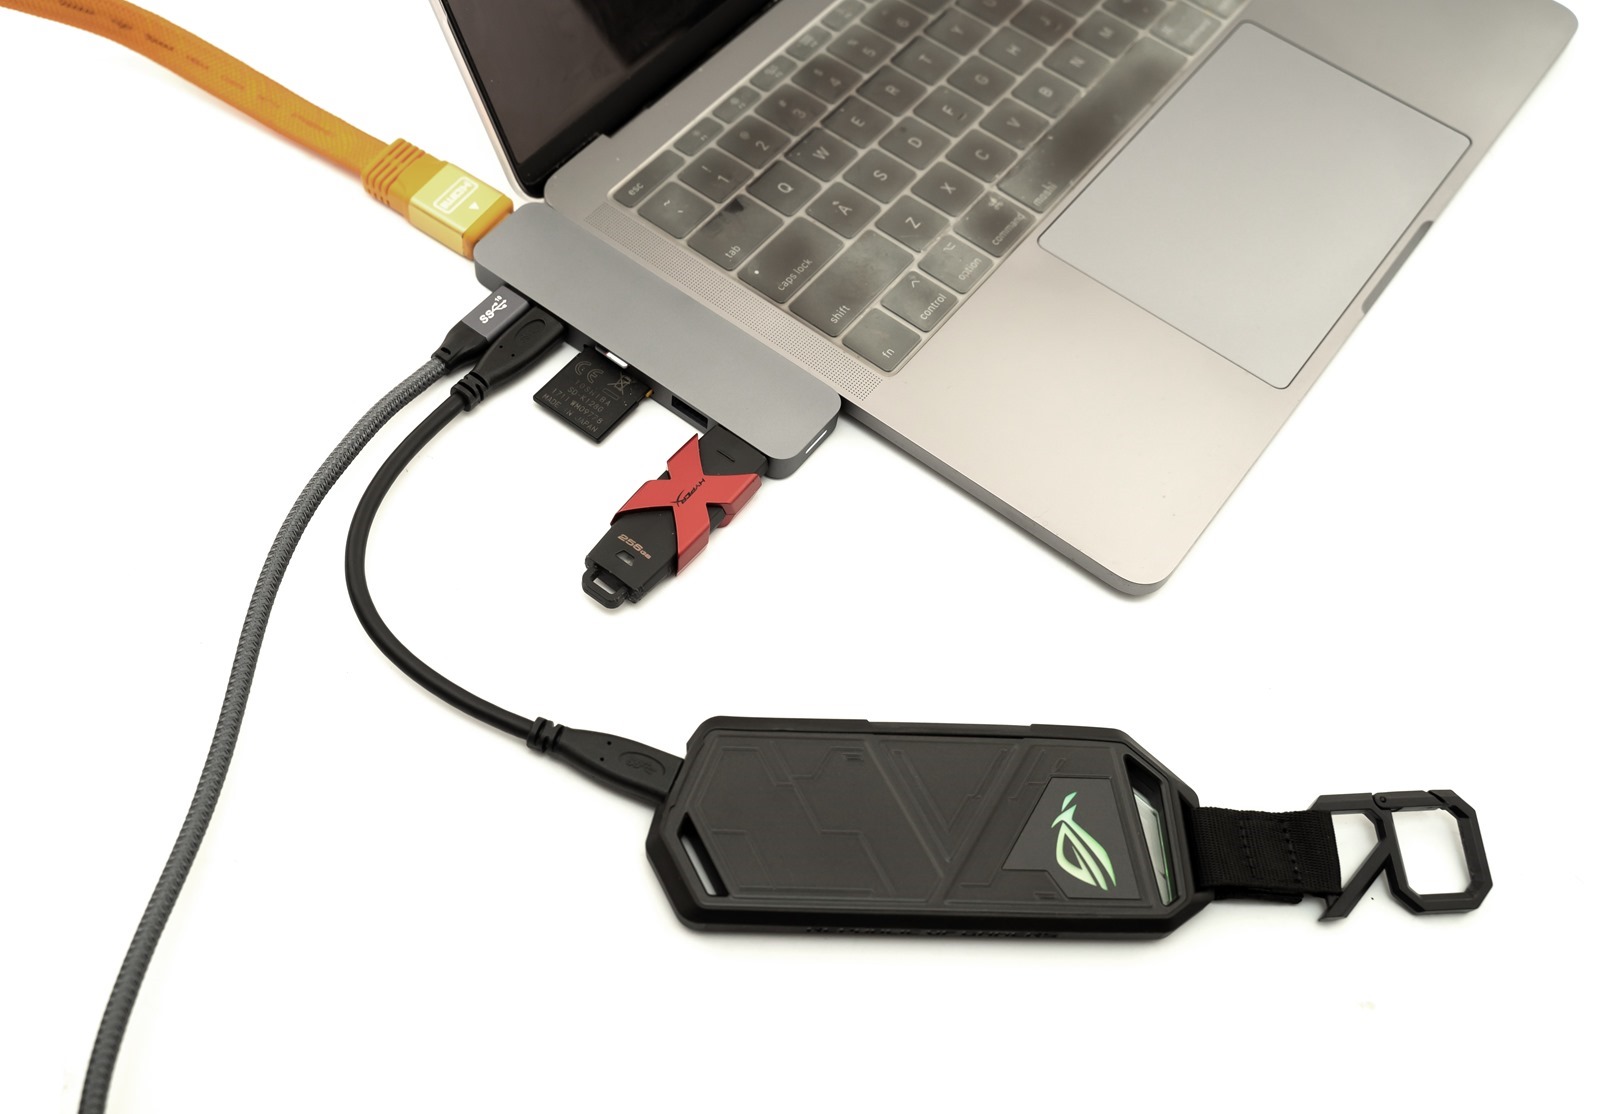 募資超過兩億 HyperDrive 7-in-2 USB-C Hub，專為 Mac 打造，疾速美型雙 USB-C 集線器 @3C 達人廖阿輝